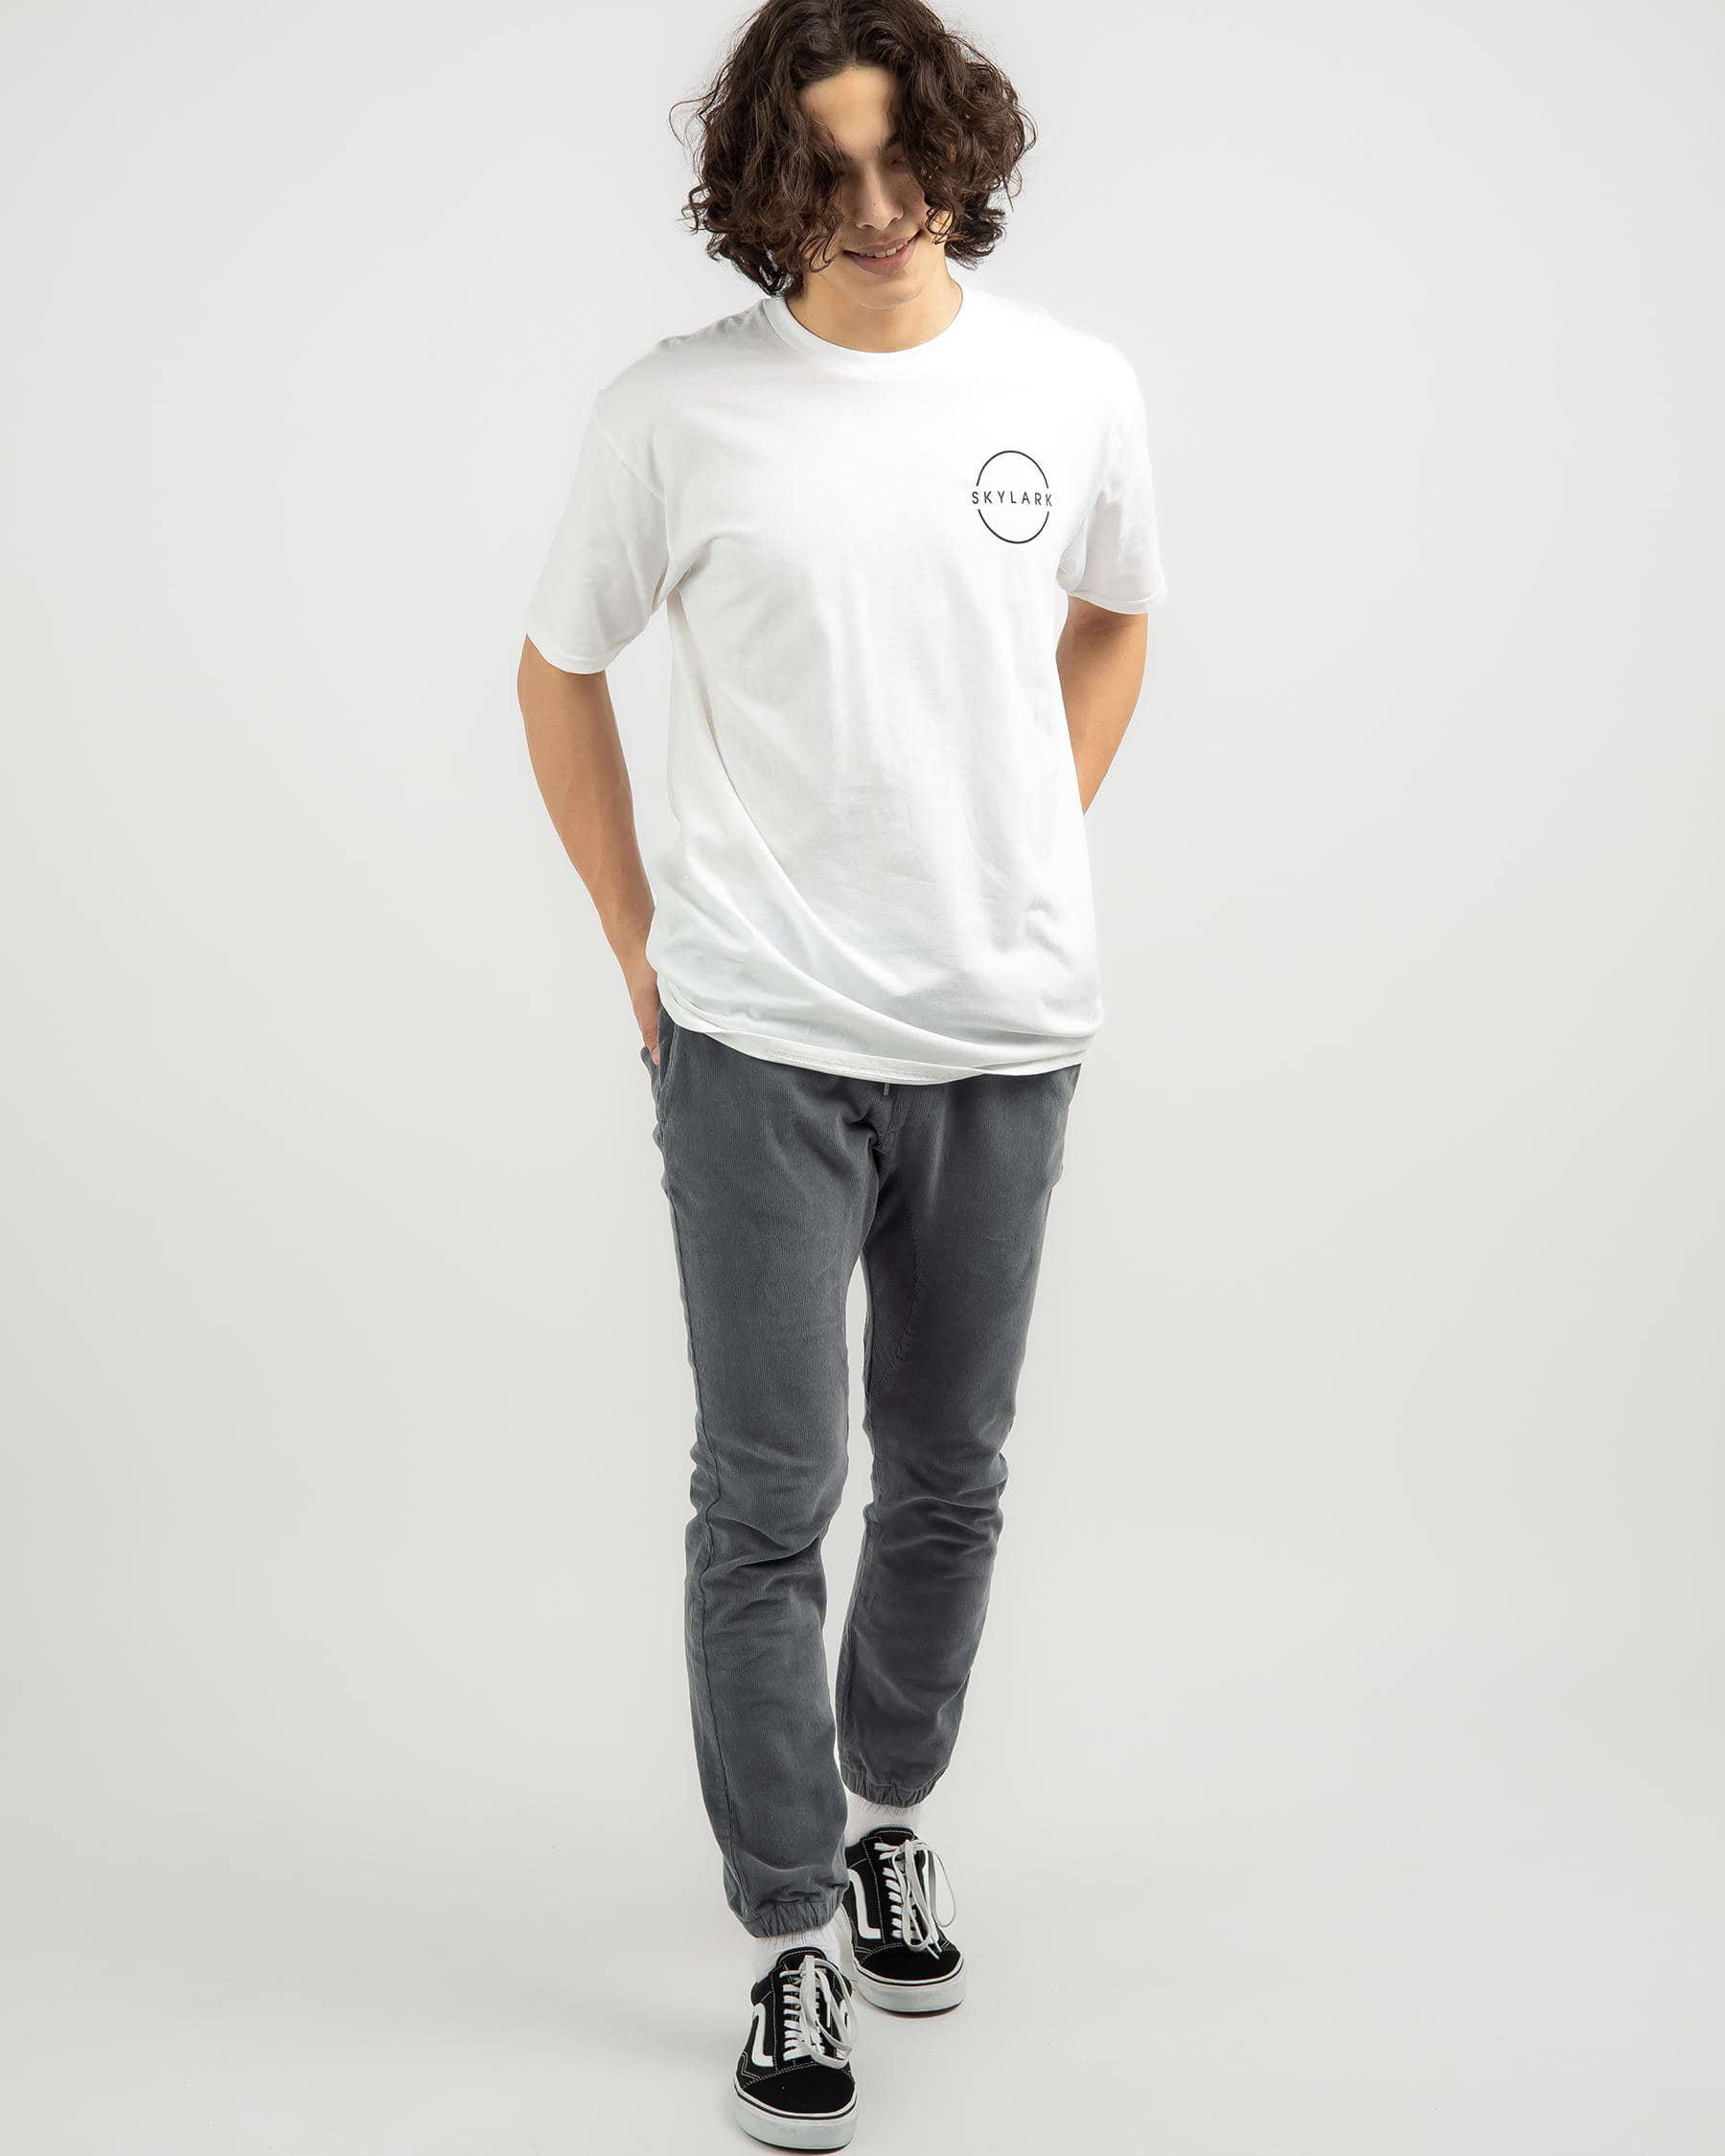 Skylark Balance T-Shirt In White - Fast Shipping & Easy Returns - City ...